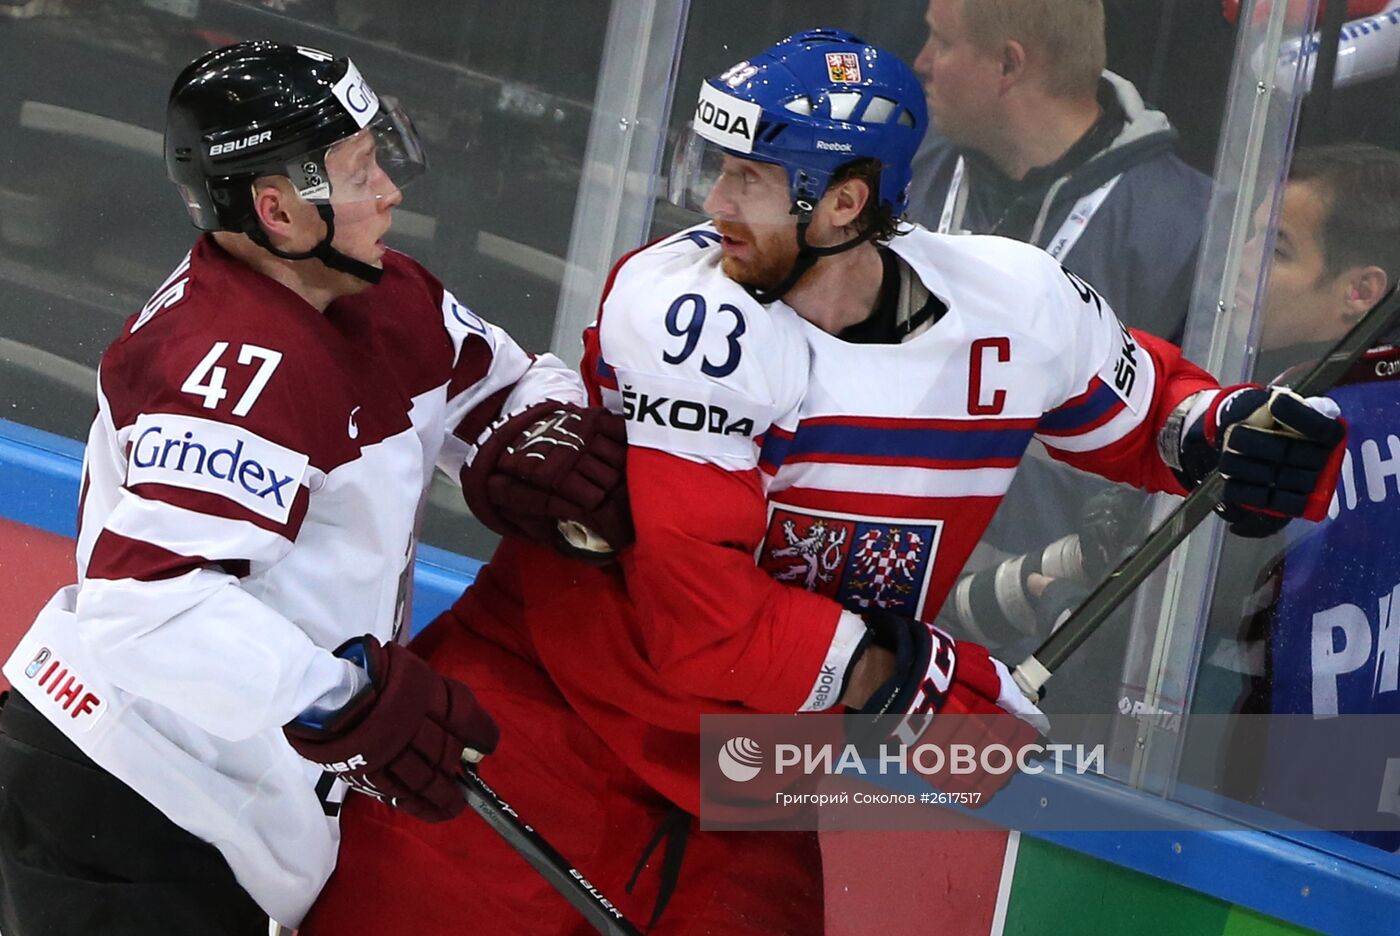 Хоккей. Чемпионат мира - 2015. Матч Латвия - Чехия